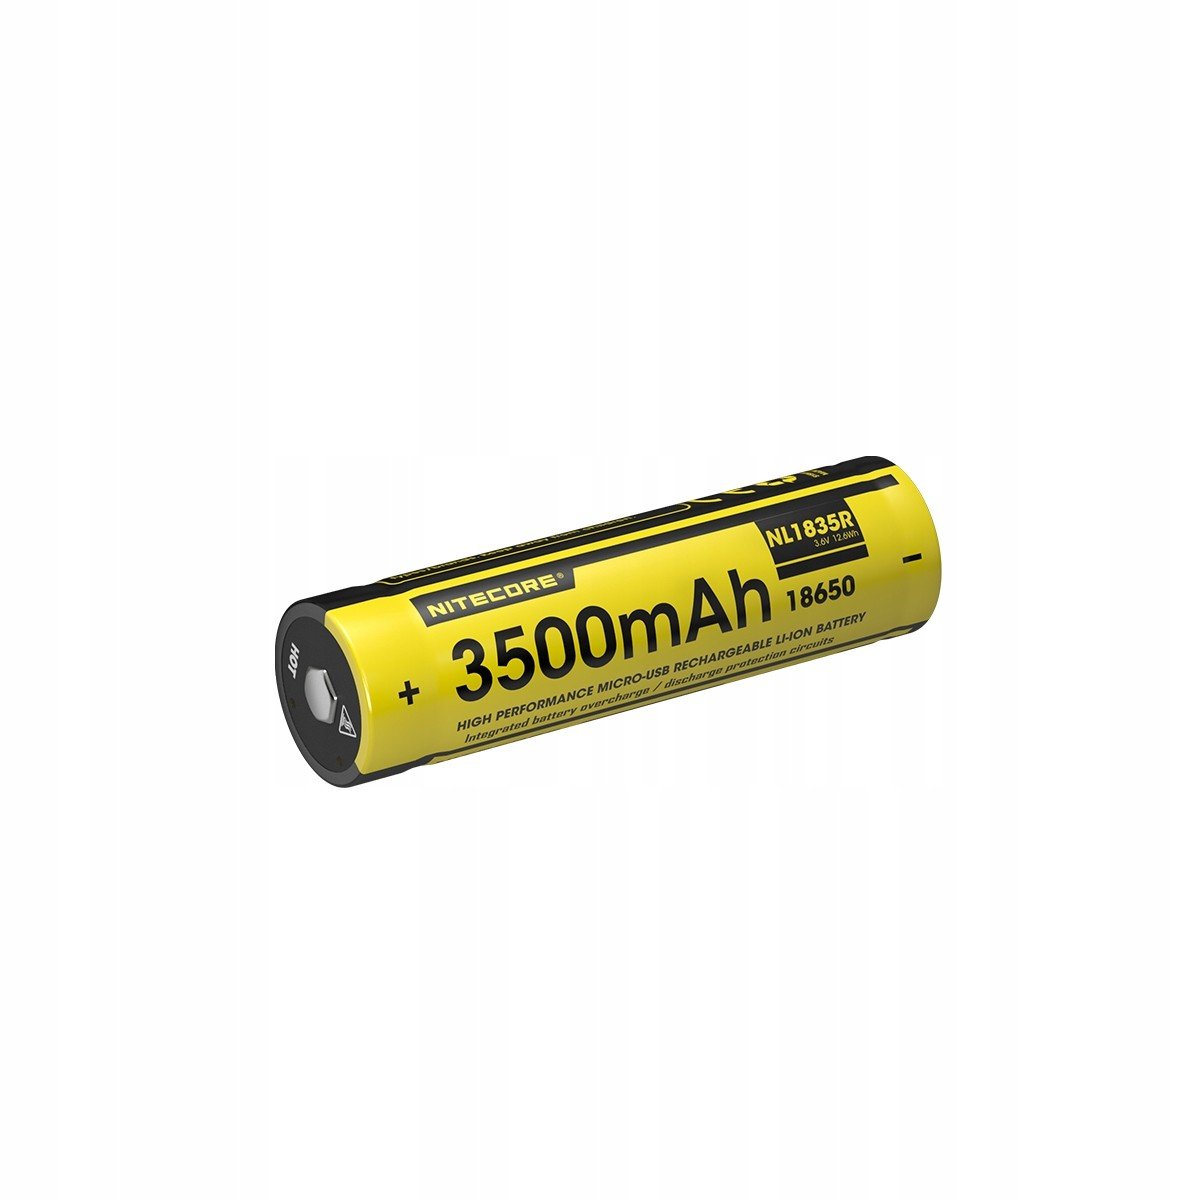 Baterie Nitecore NL1835R 3500mAh (LAT/Nitecore